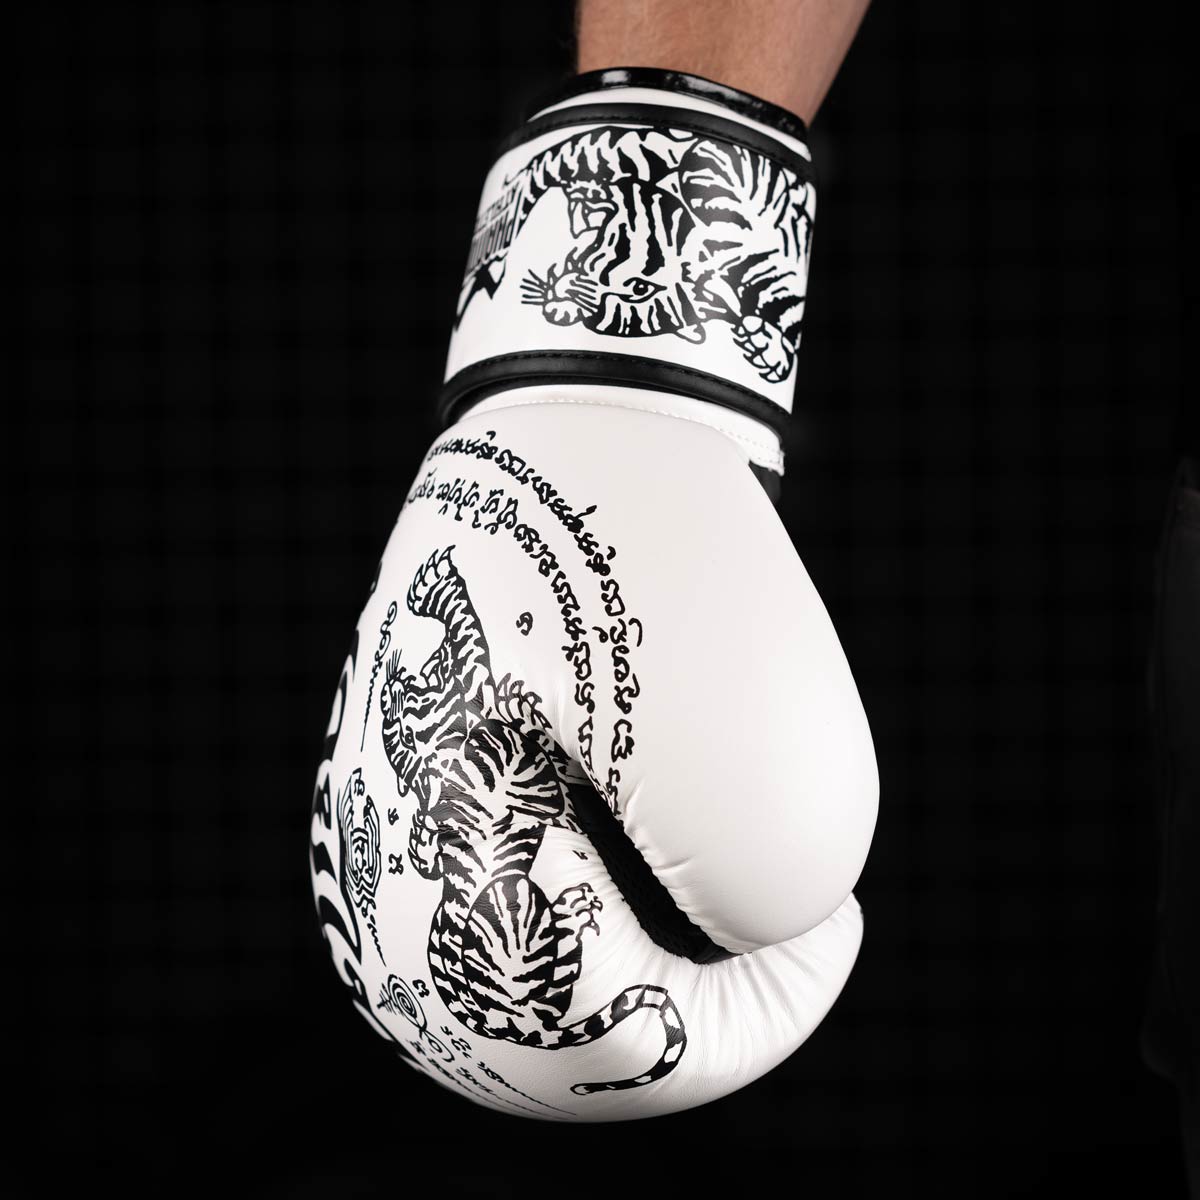 Die Phantom Muay Thai Boxhandschuhe in der Farbe Weiss.